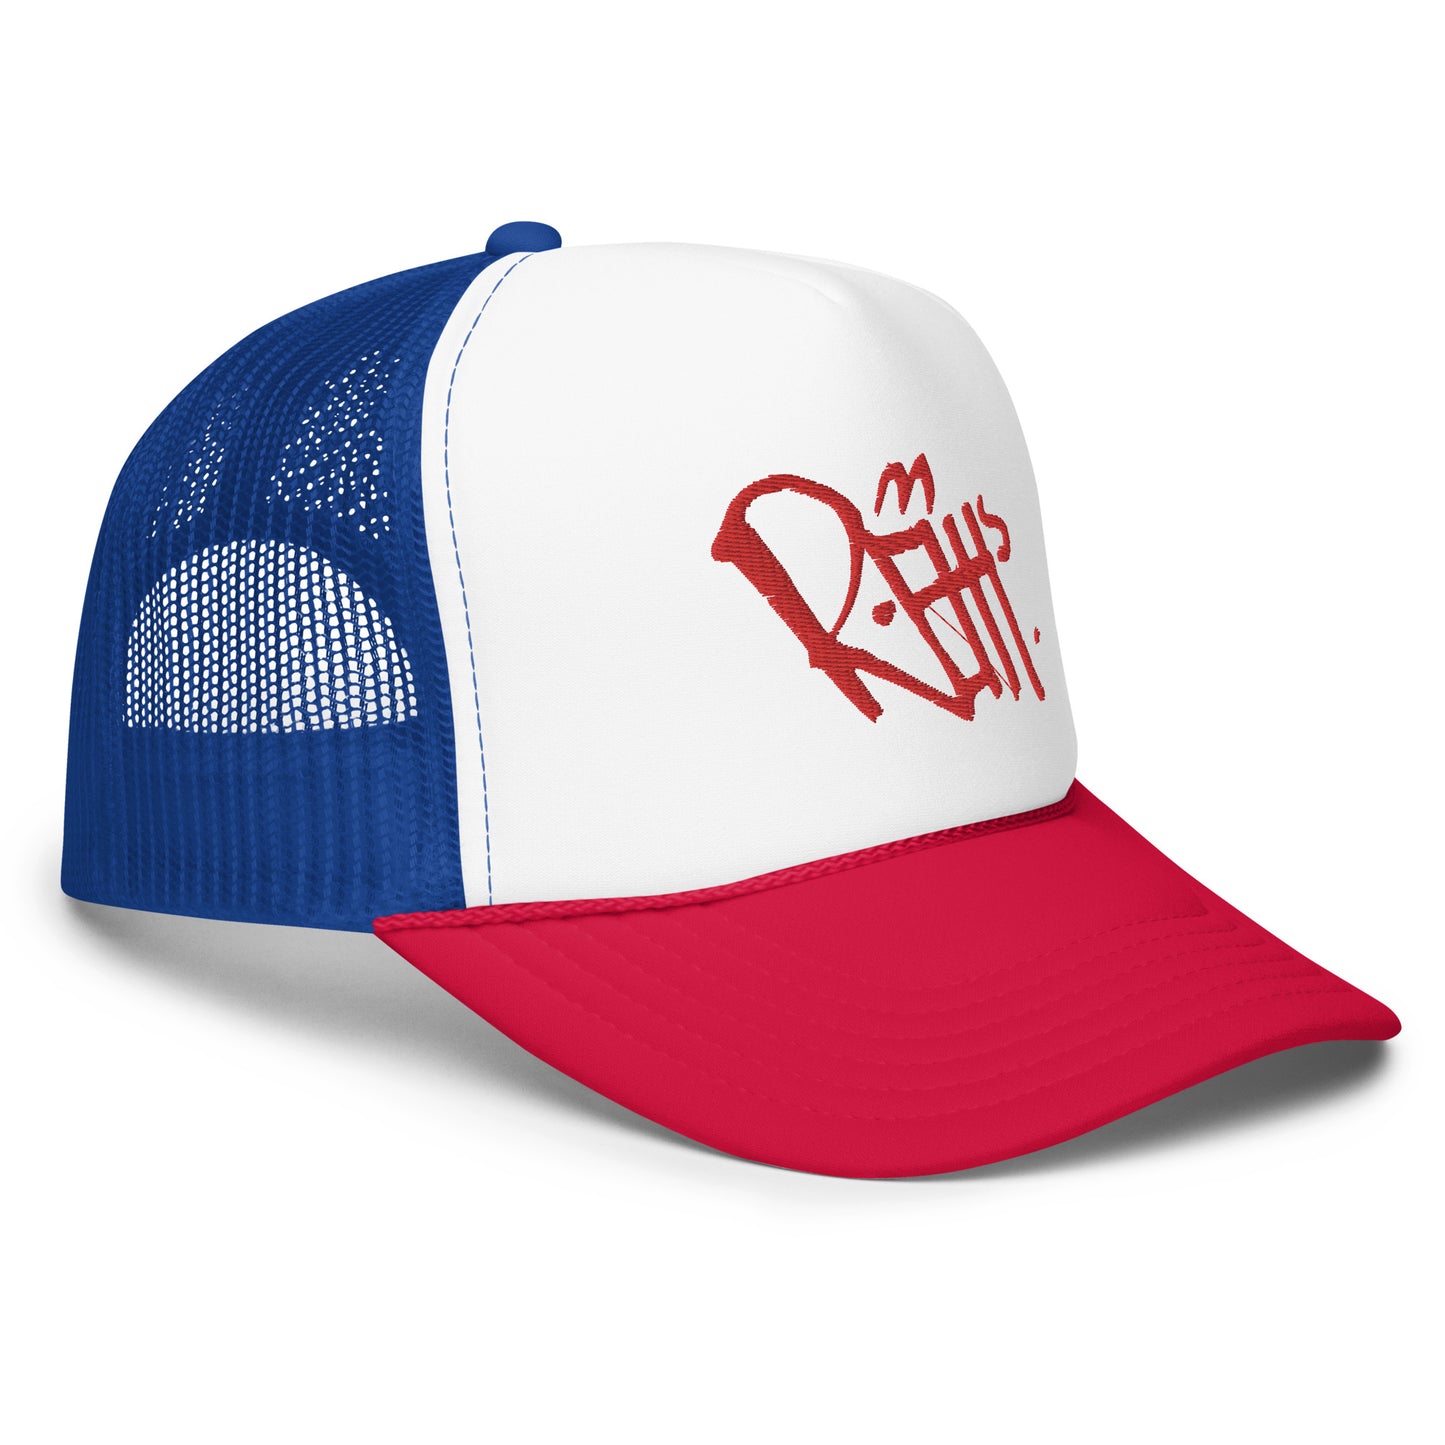 REHH - Foam trucker hat (Red/Blue/White)